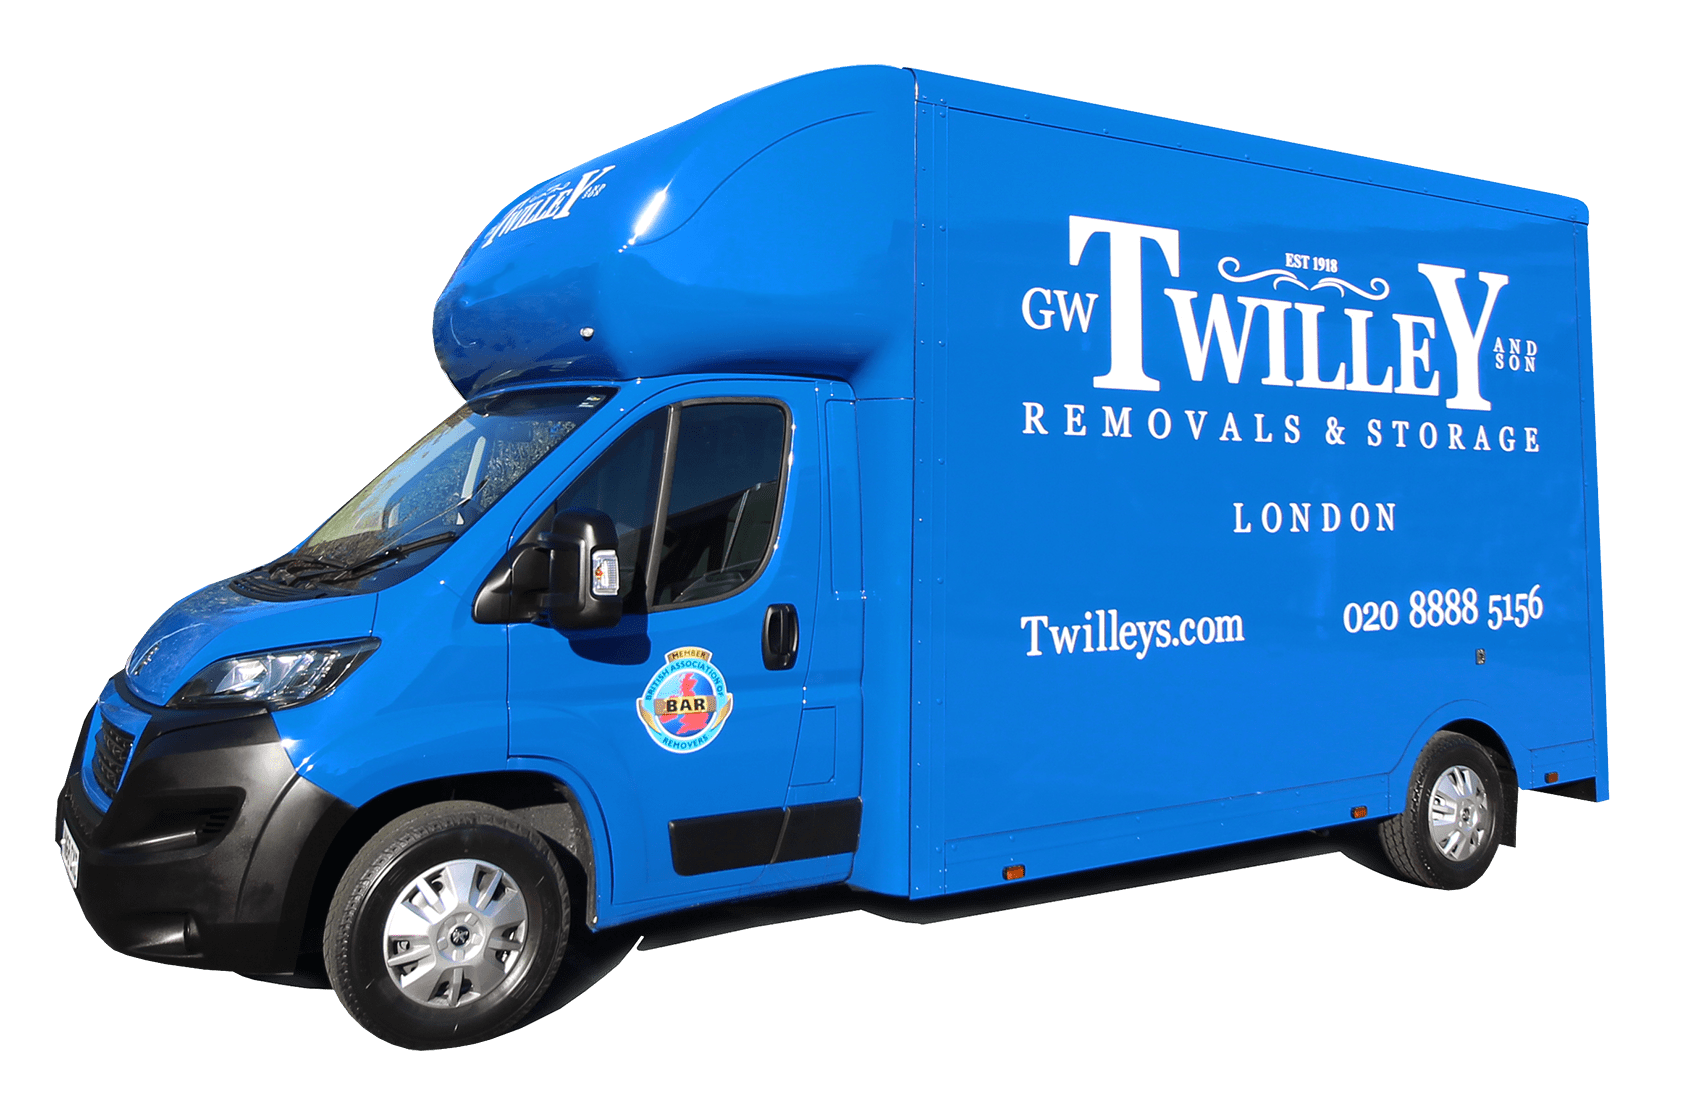 GW Twilley truck